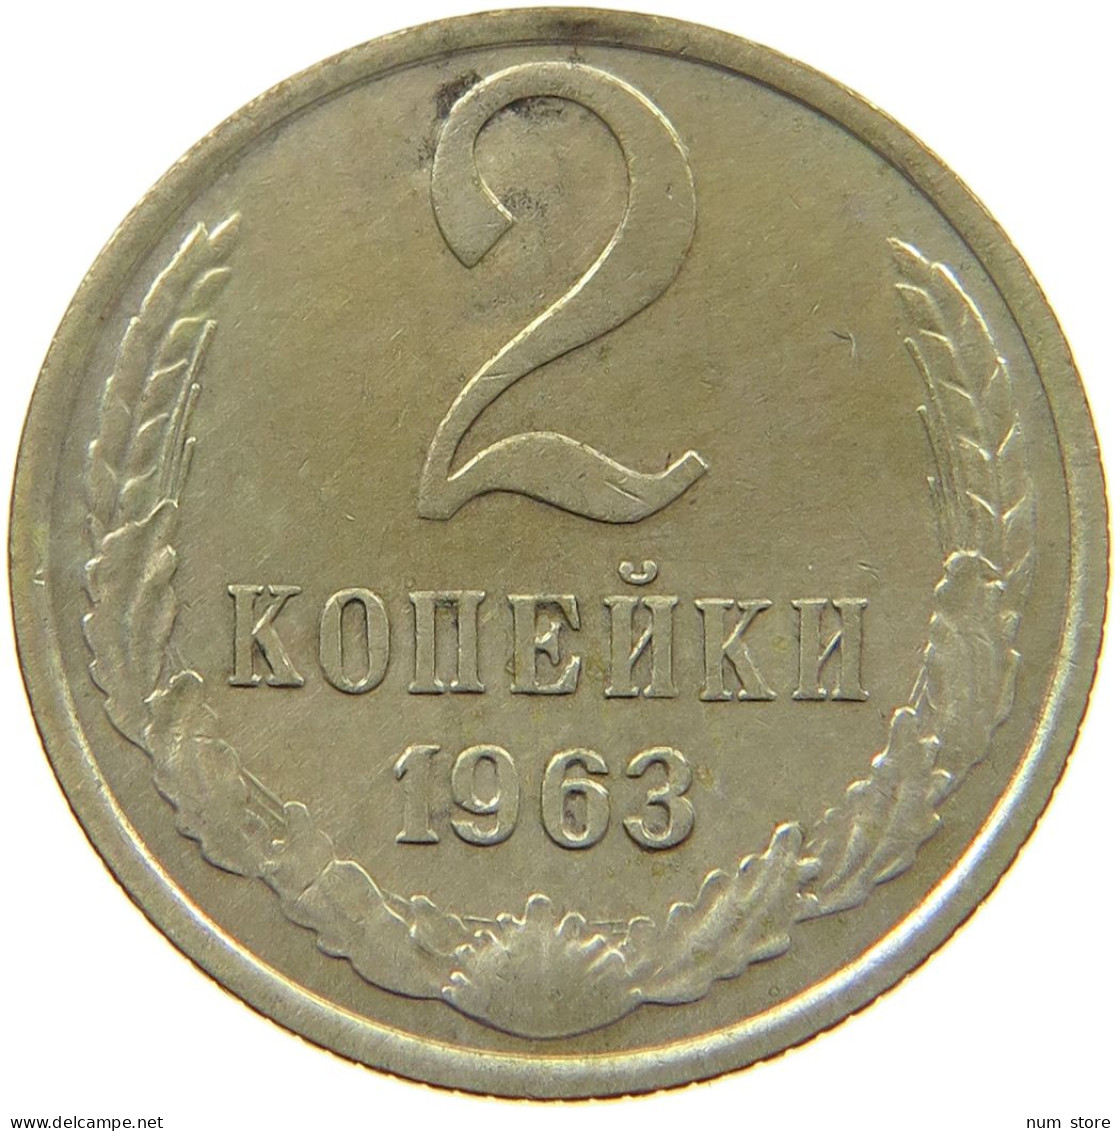 RUSSIA 2 KOPEKEN 1963 ANDERES MATERIAL #MA 003543 - Russie